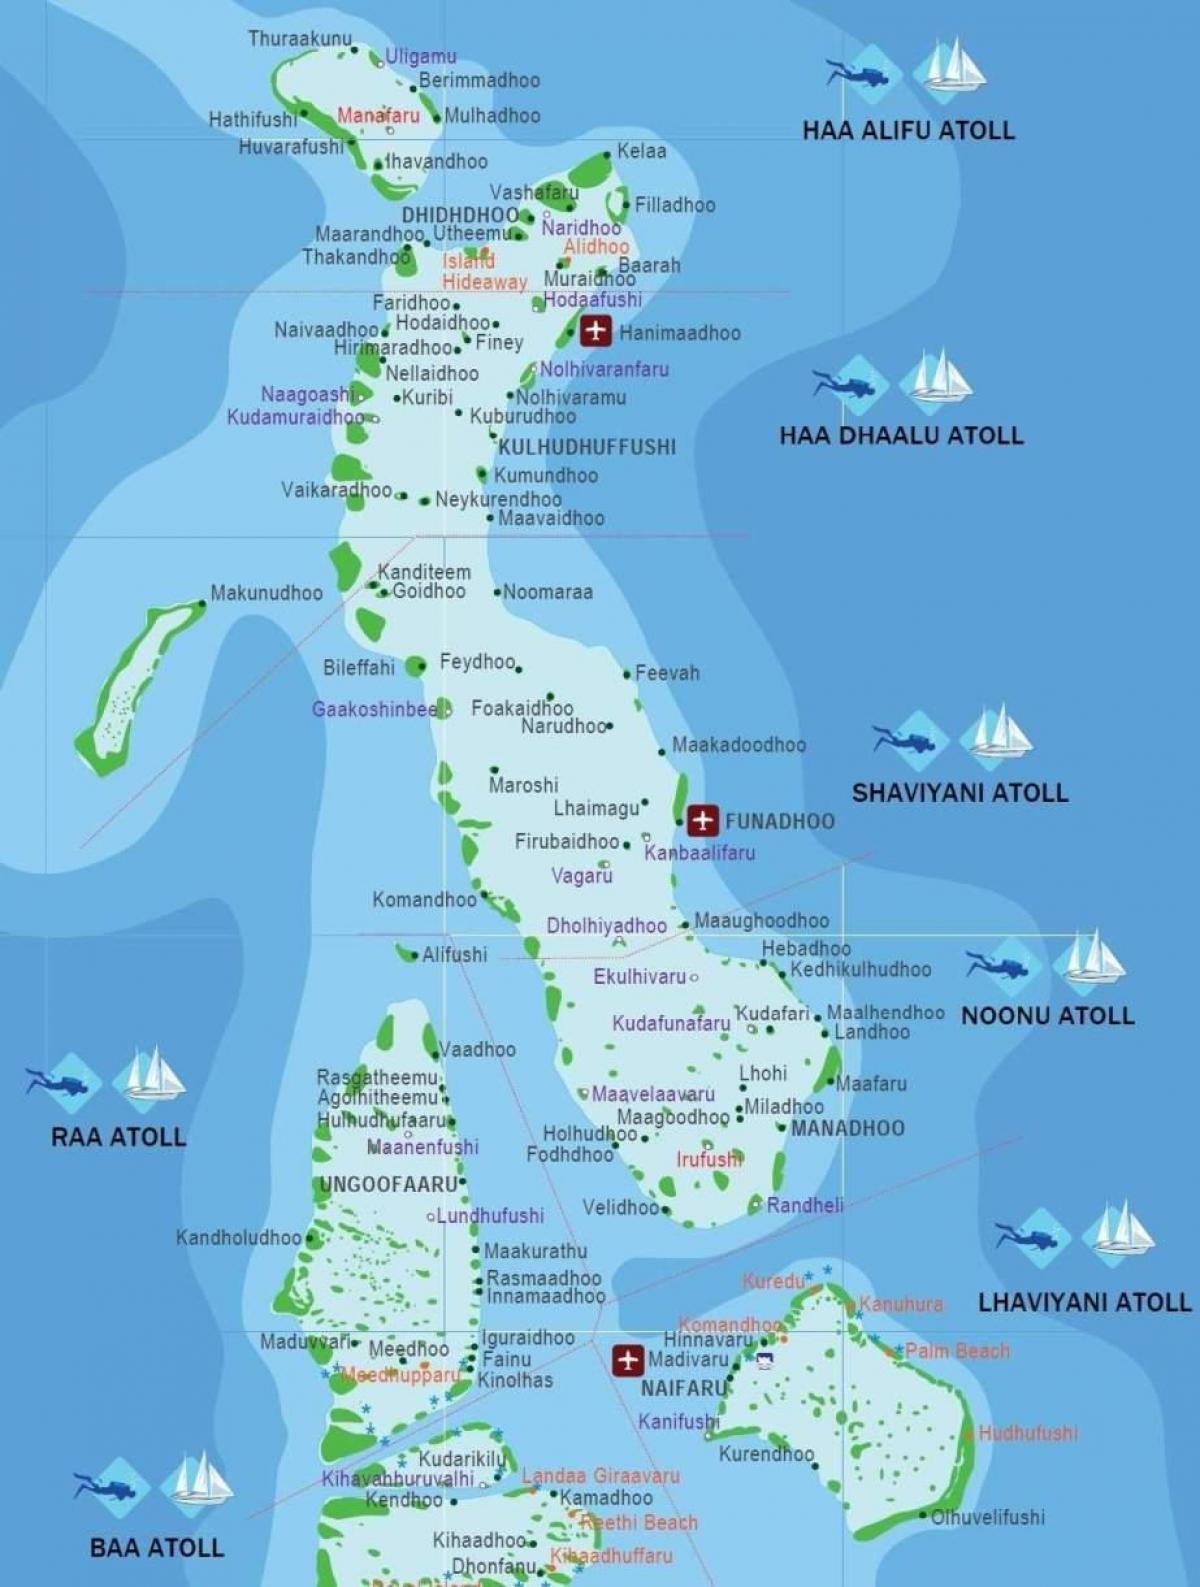 completa el mapa de les maldives